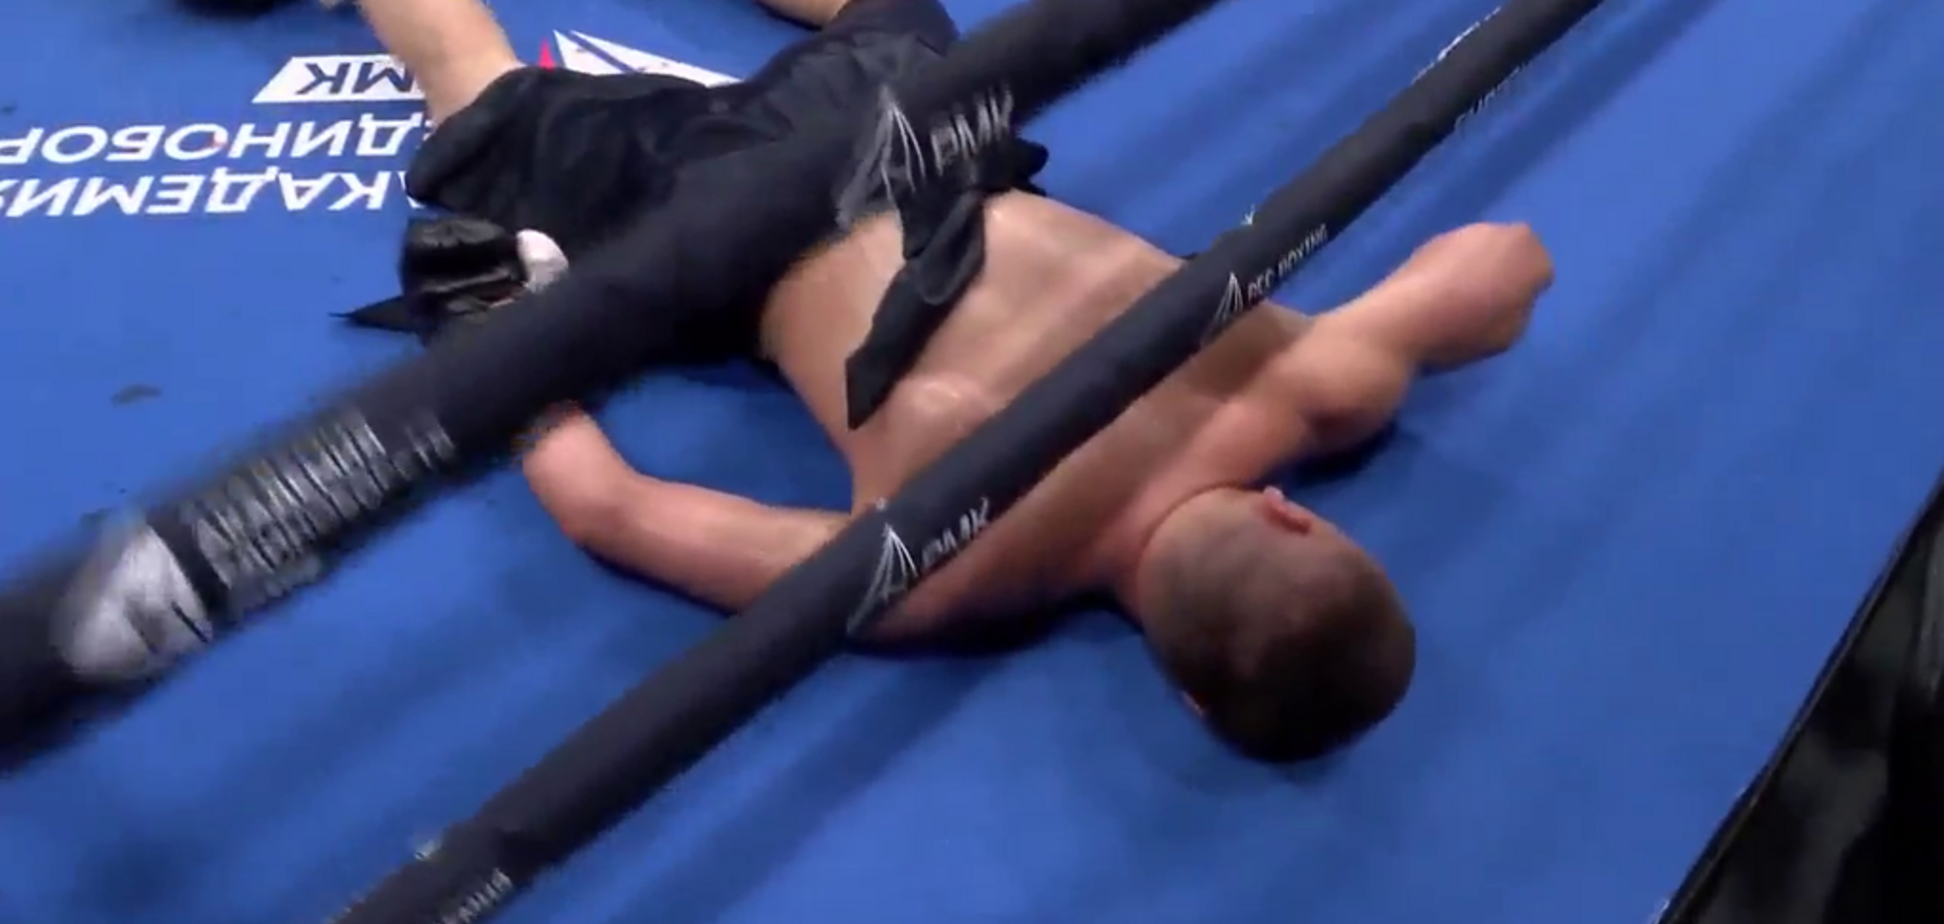 Непобедимого русского боксера после жуткого нокаута унесли на носилках - видеофакт